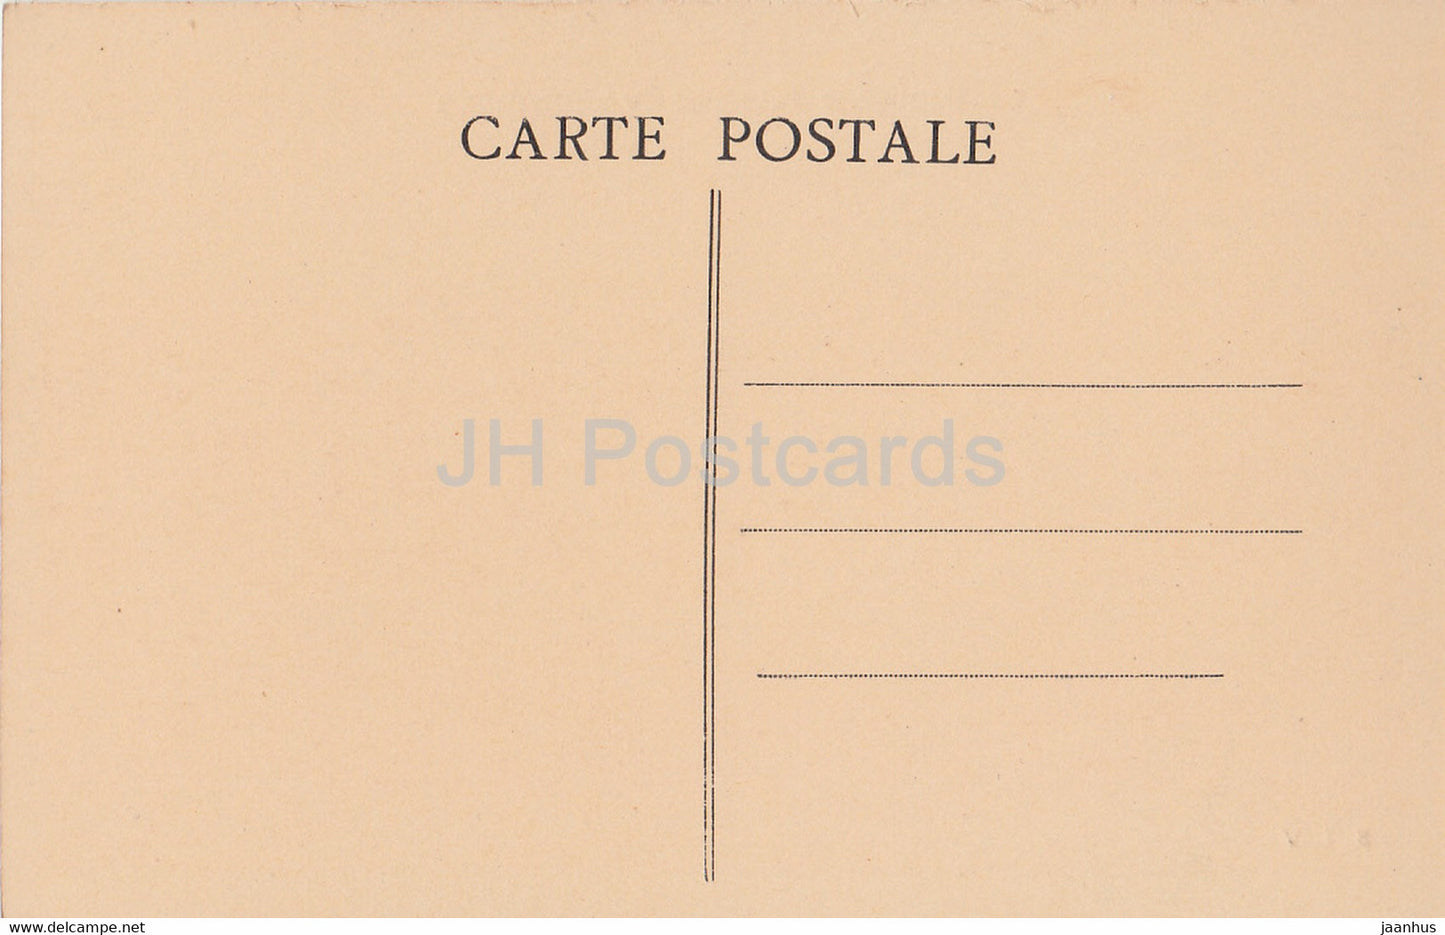 Varneville - Deutscher Friedhof - cimetière - militaire - Première Guerre mondiale - 192 - carte postale ancienne - France - inutilisé